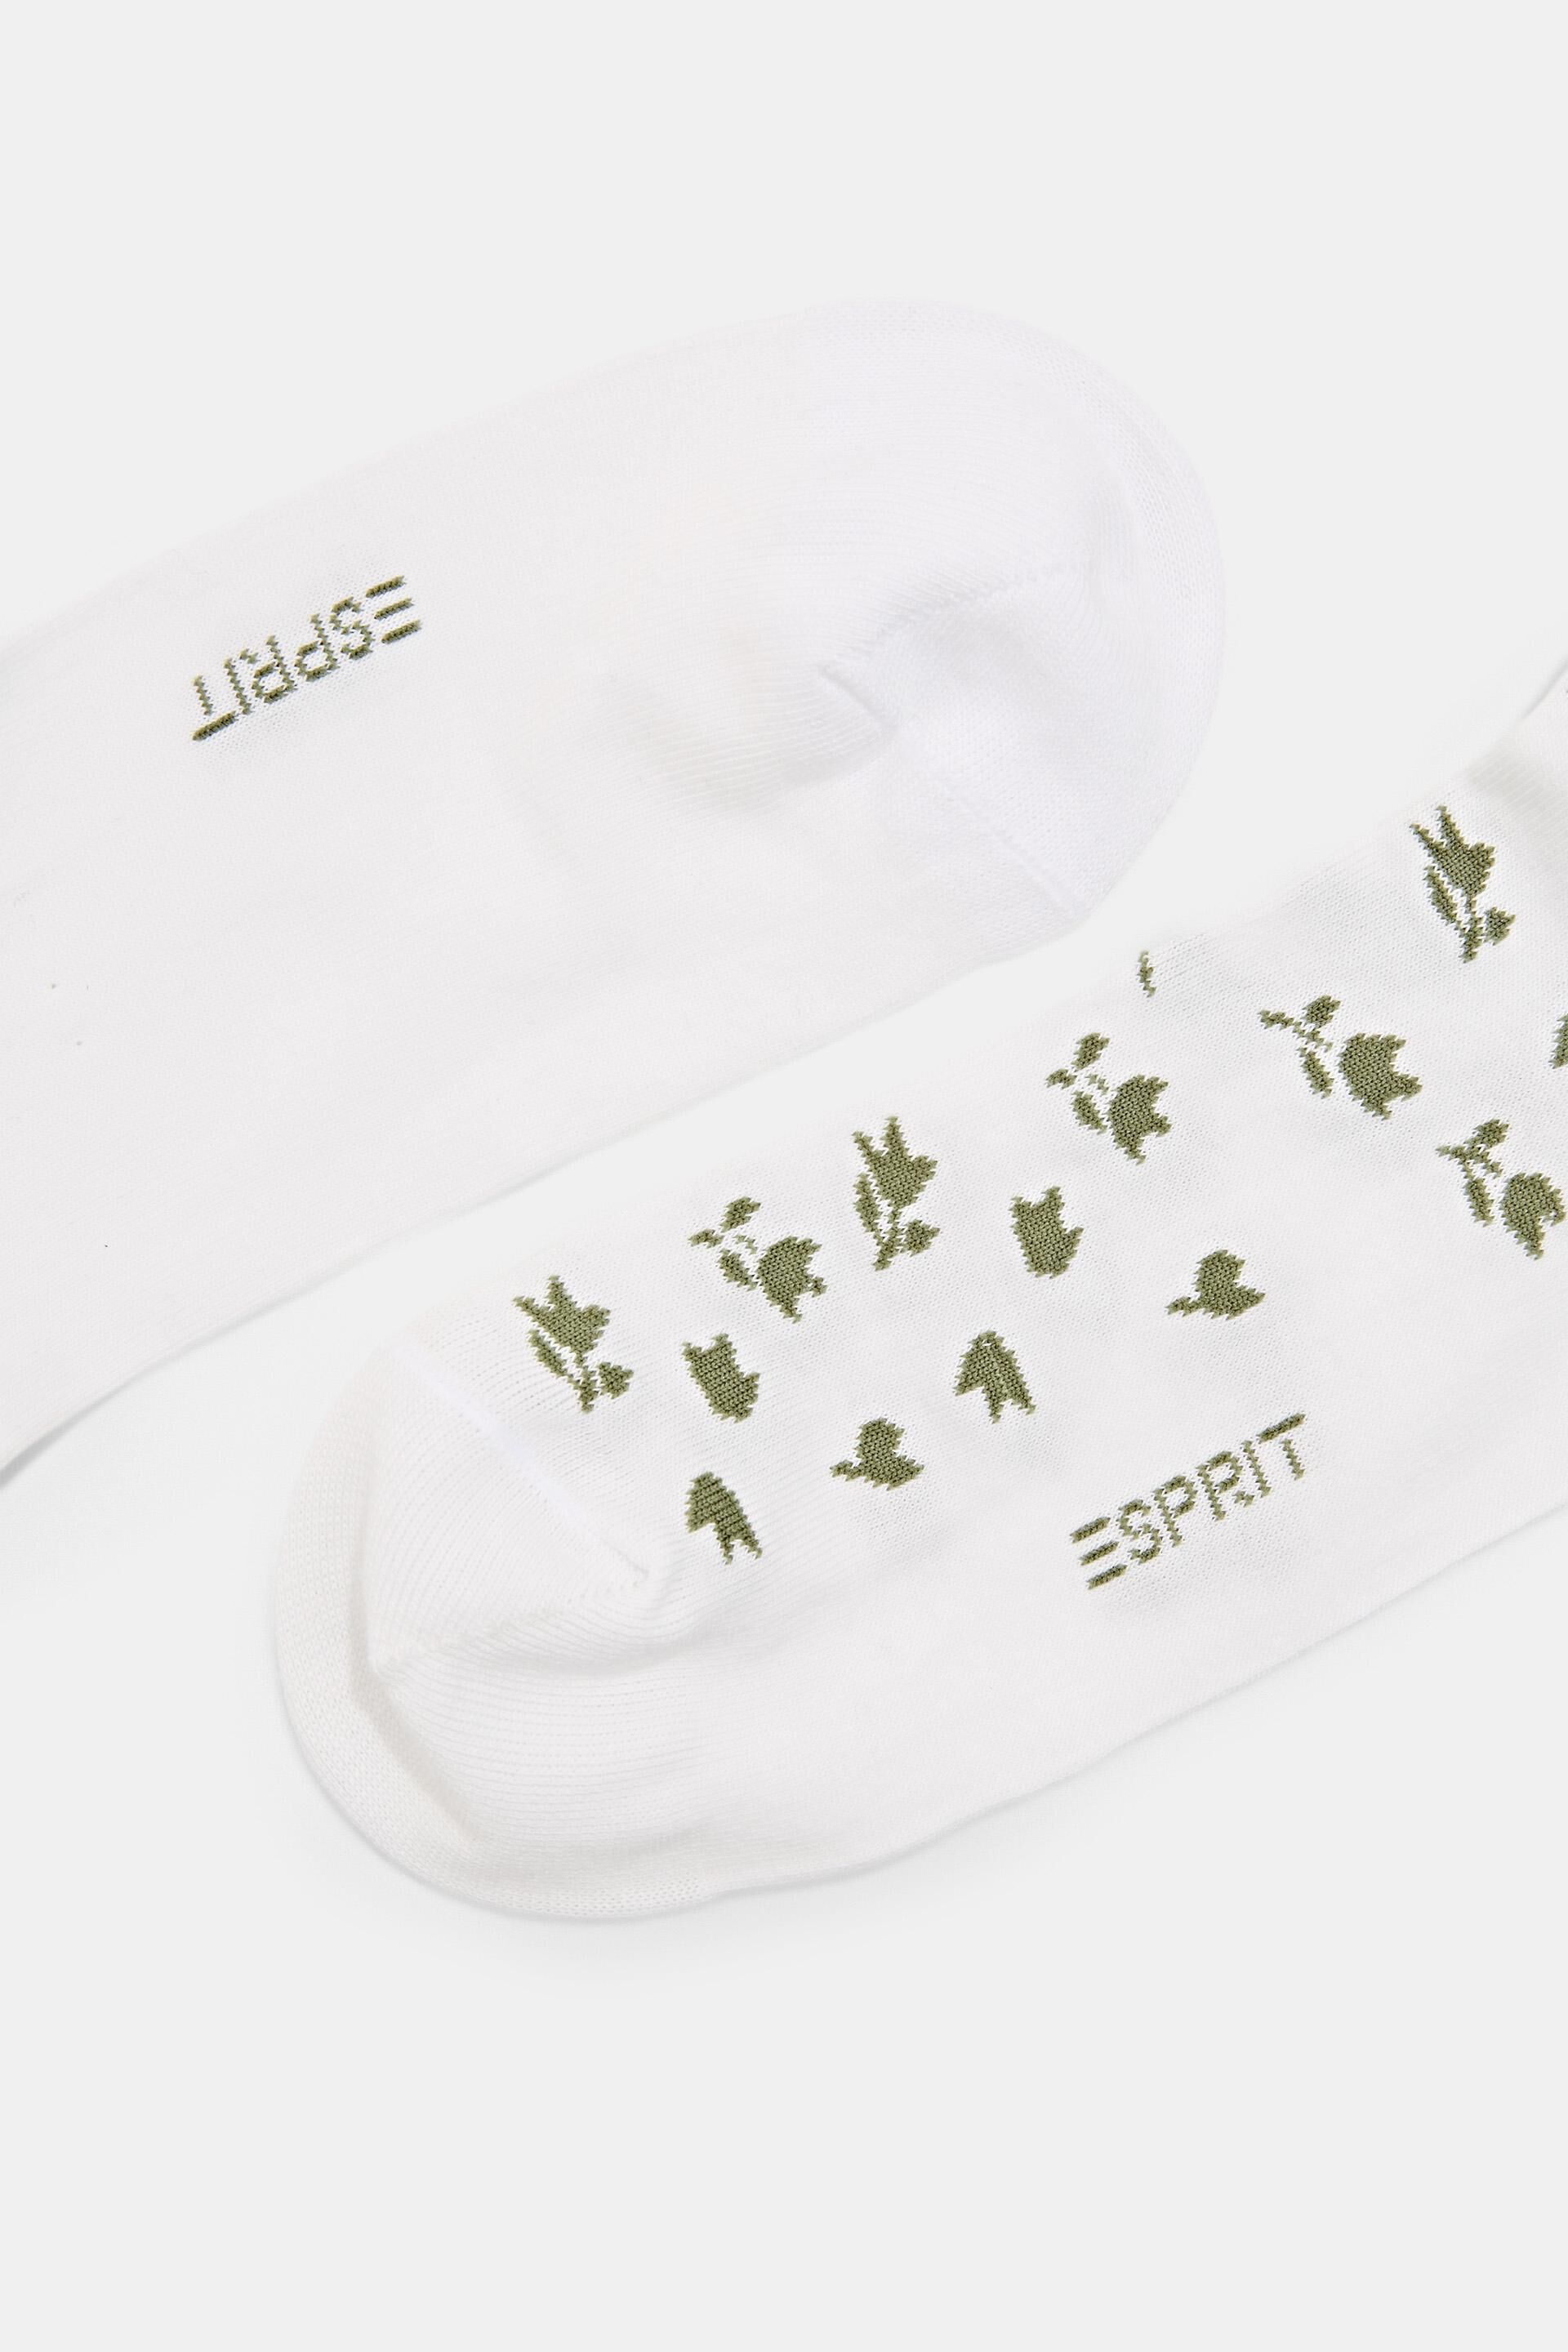 Esprit 2er-Pack Blumenmuster Socken kurze mit